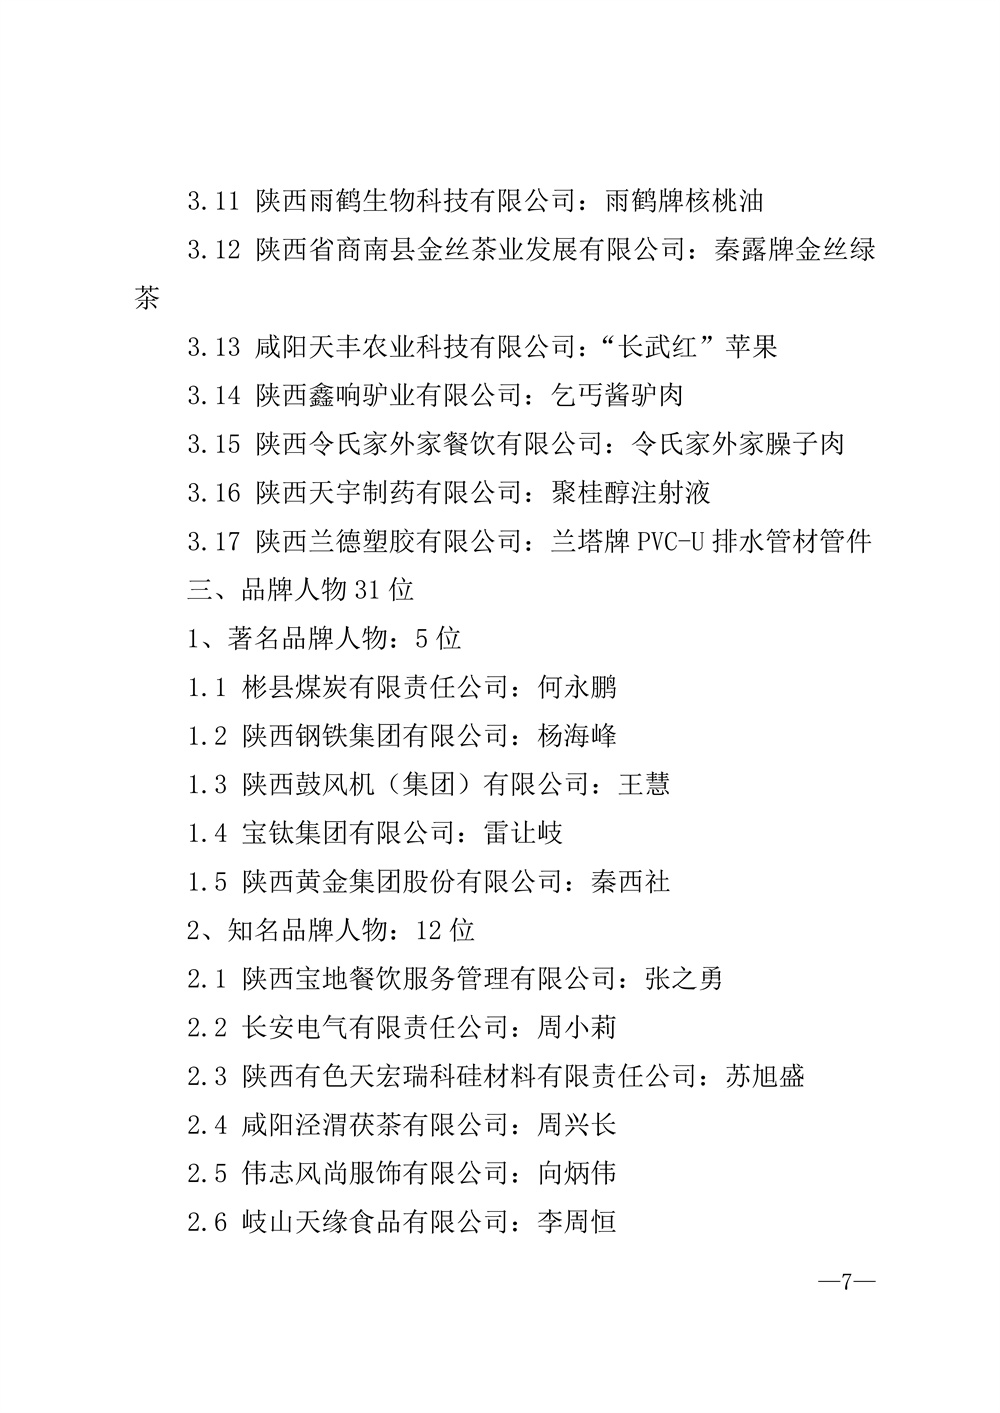 22-52陕西省2021年度品牌评选公示通知_页面_07.jpg